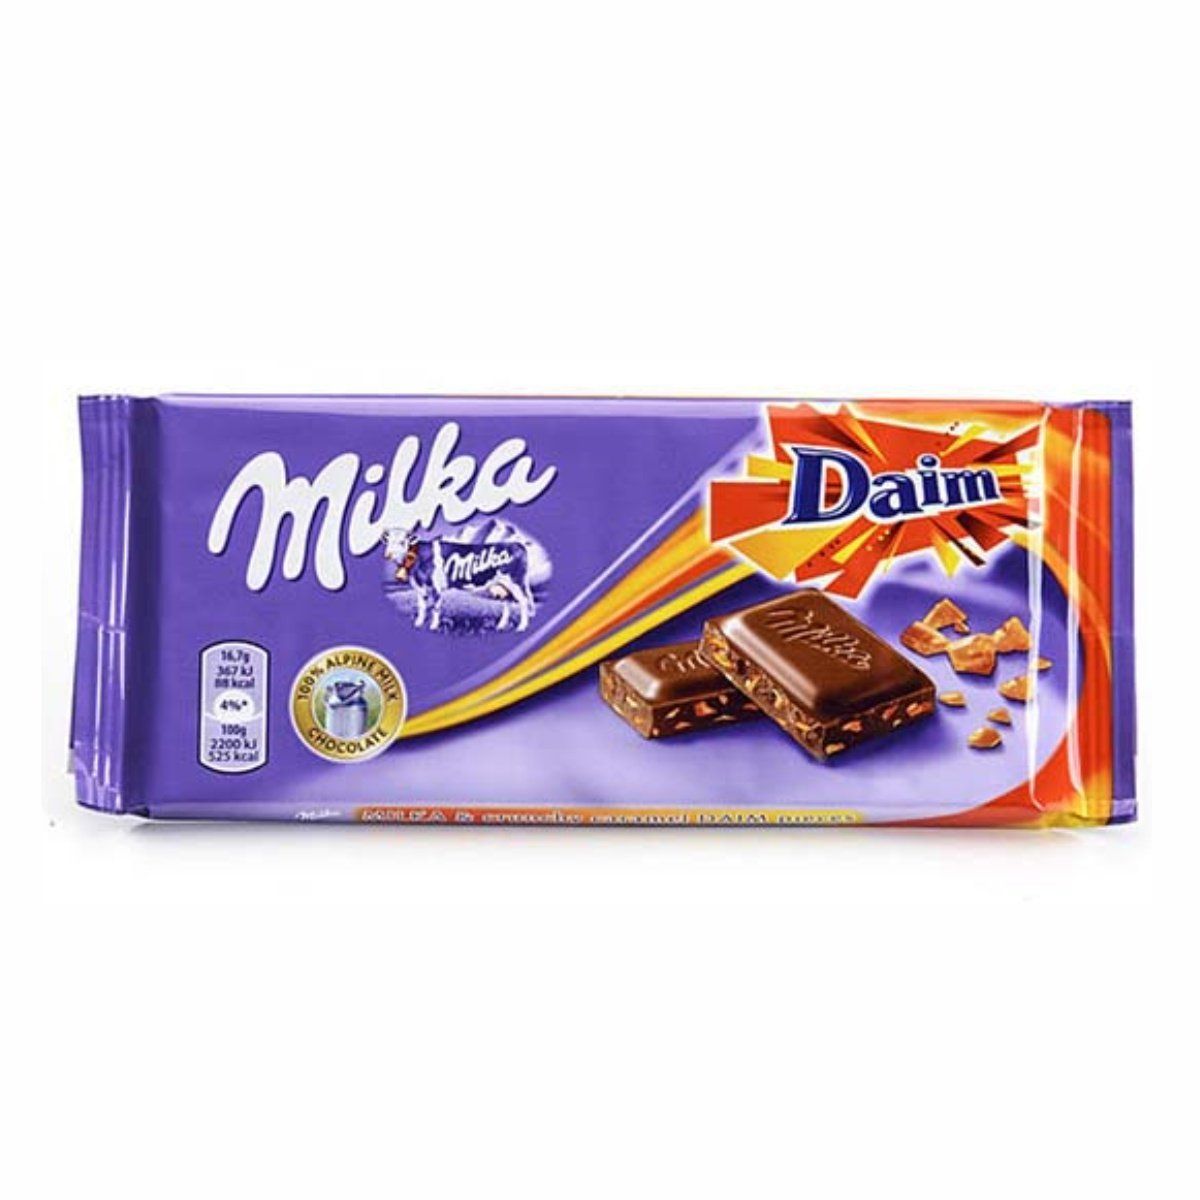 Милка кб. Шоколад Milka & daim 100гр. Шоколад Milka & daim, 100 г. Плитка Милка 100 г. Шоколадная плитка Milka daim 100г 1/22.